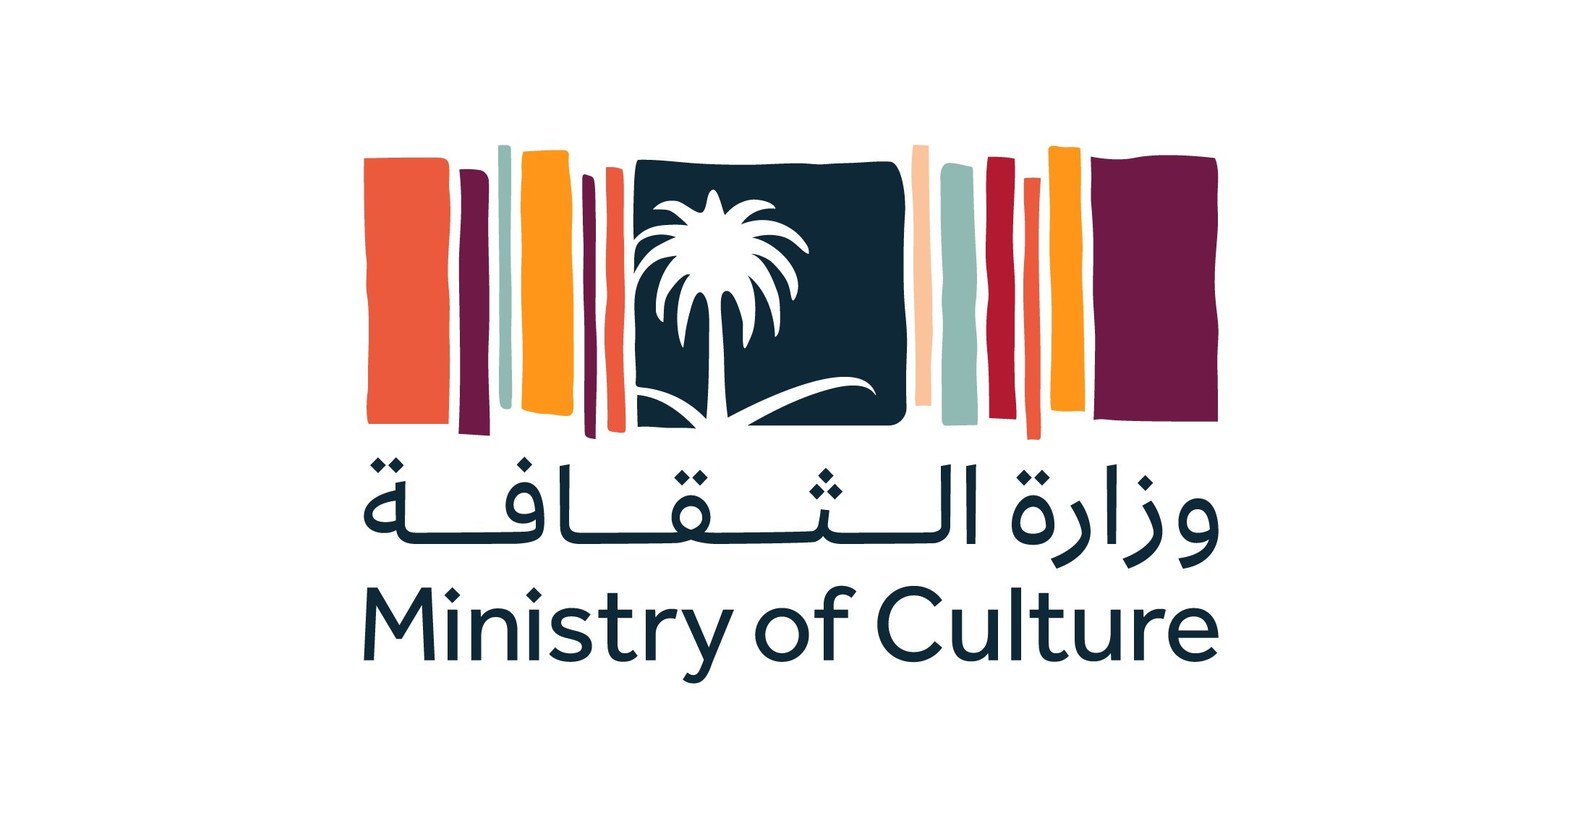 Le ministère de la Culture du Royaume d'Arabie saoudite : l'Arabie saoudite  s'ouvre pour la culture